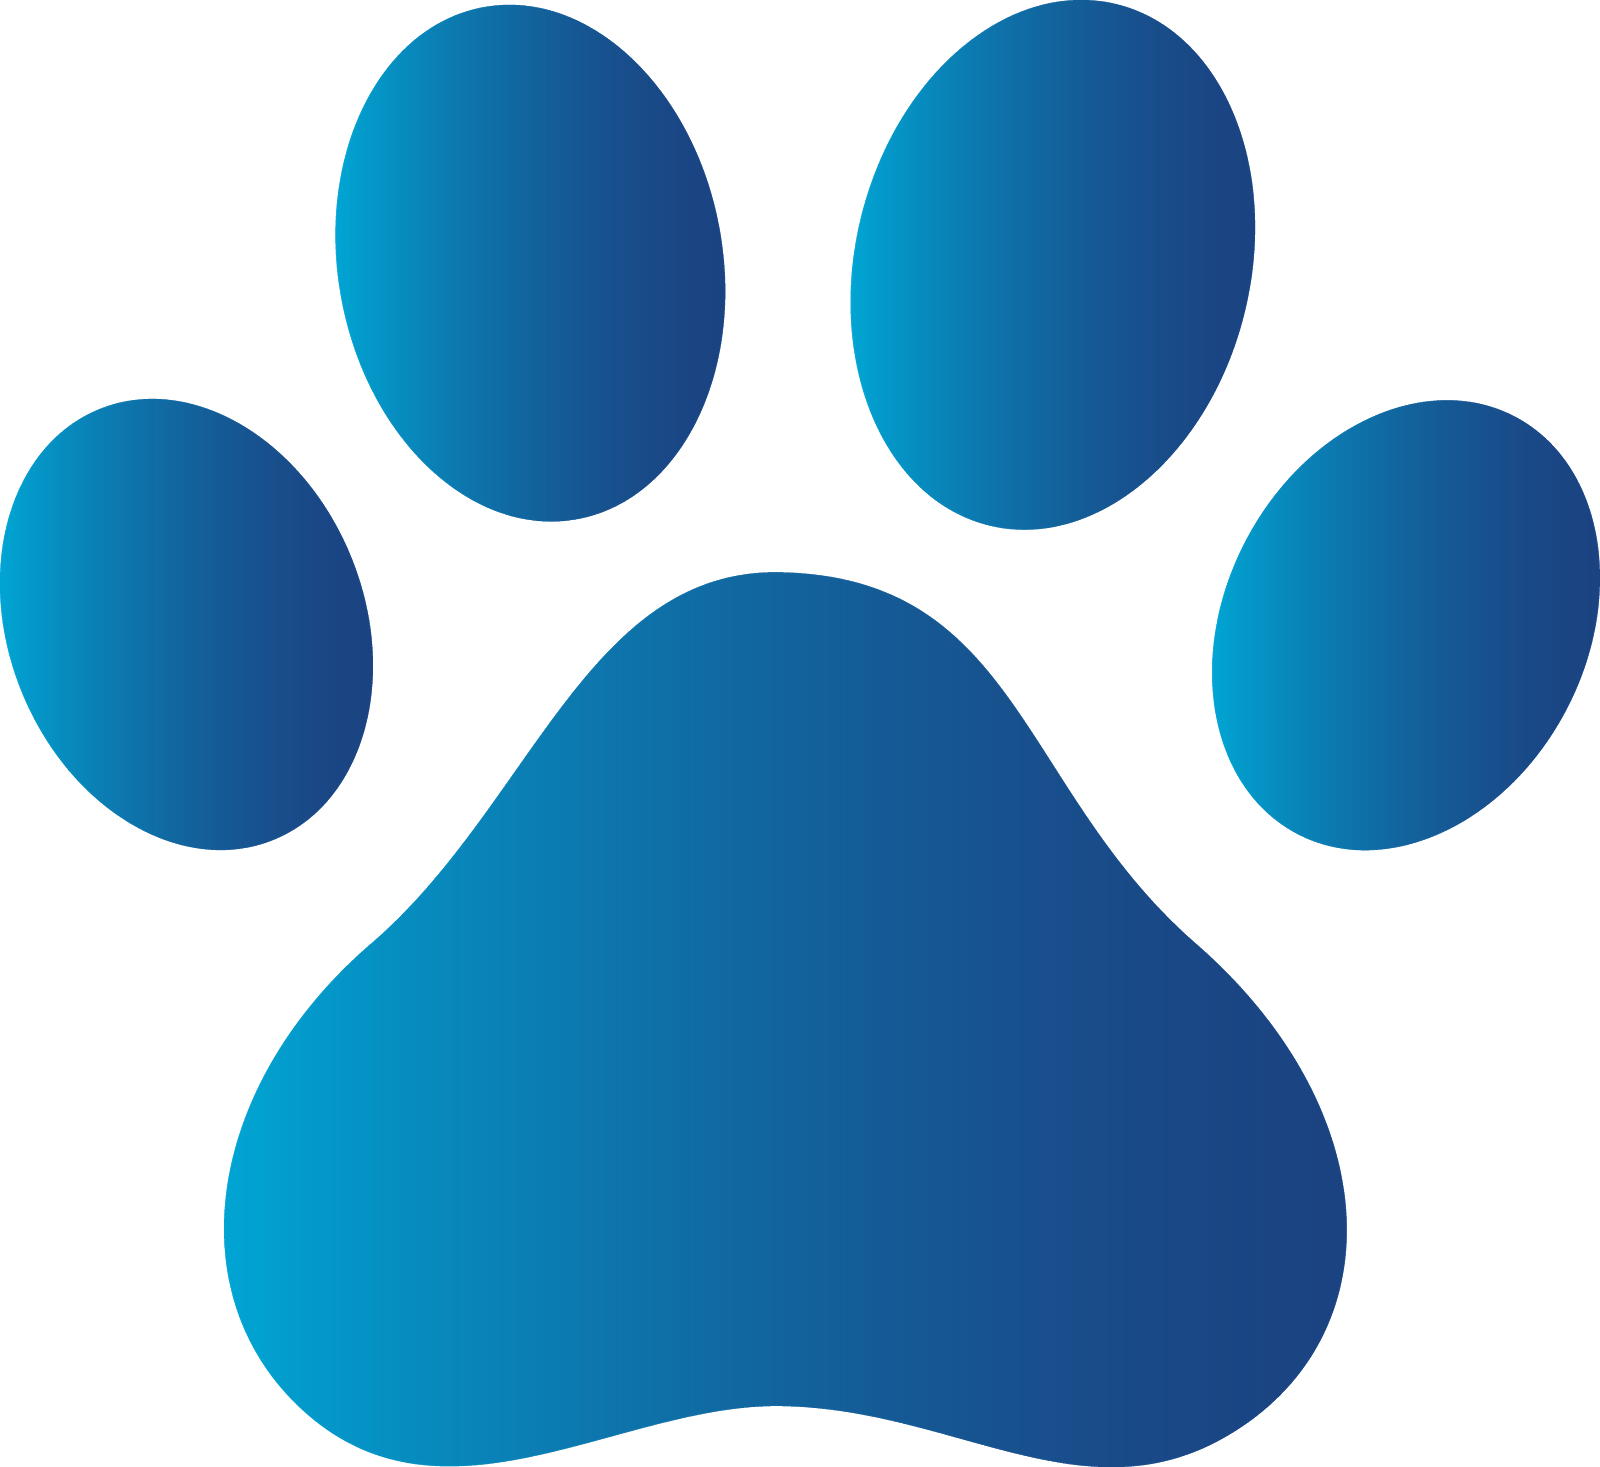 Red Dog Paw Logo - Dog paw Logos